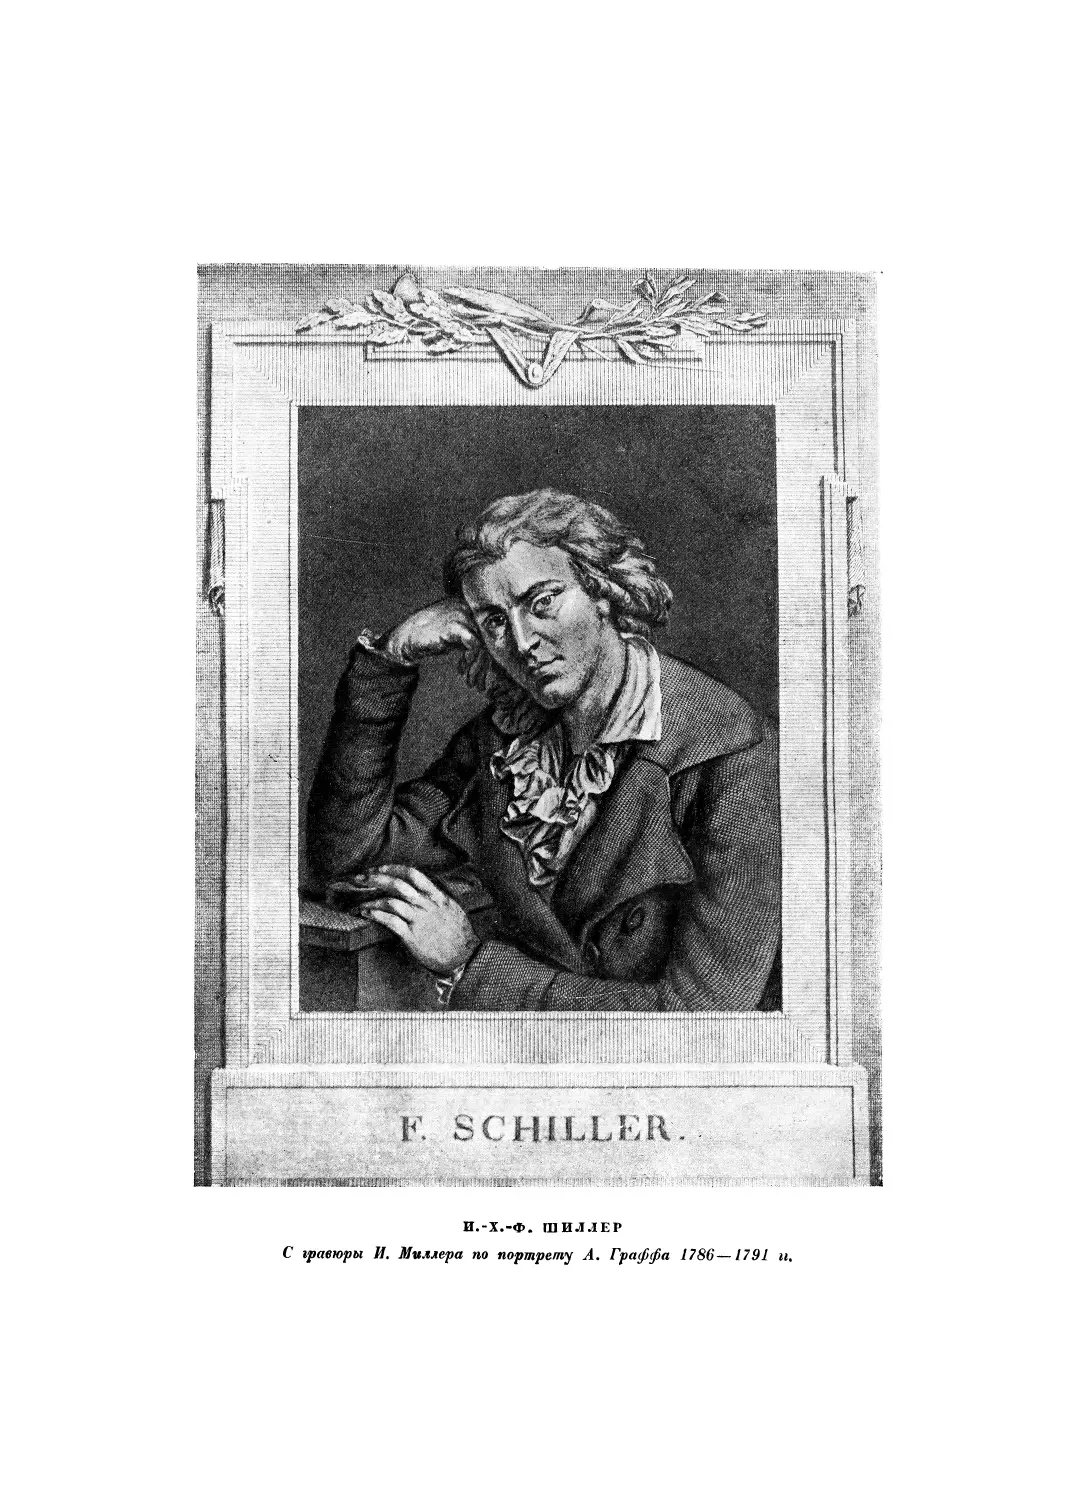 Вклейка. Ш.-Х.-Ф. Шиллер. С гравюры И. Мюллера 1794 г. по портрету А. Граффа 1786—91 гг.